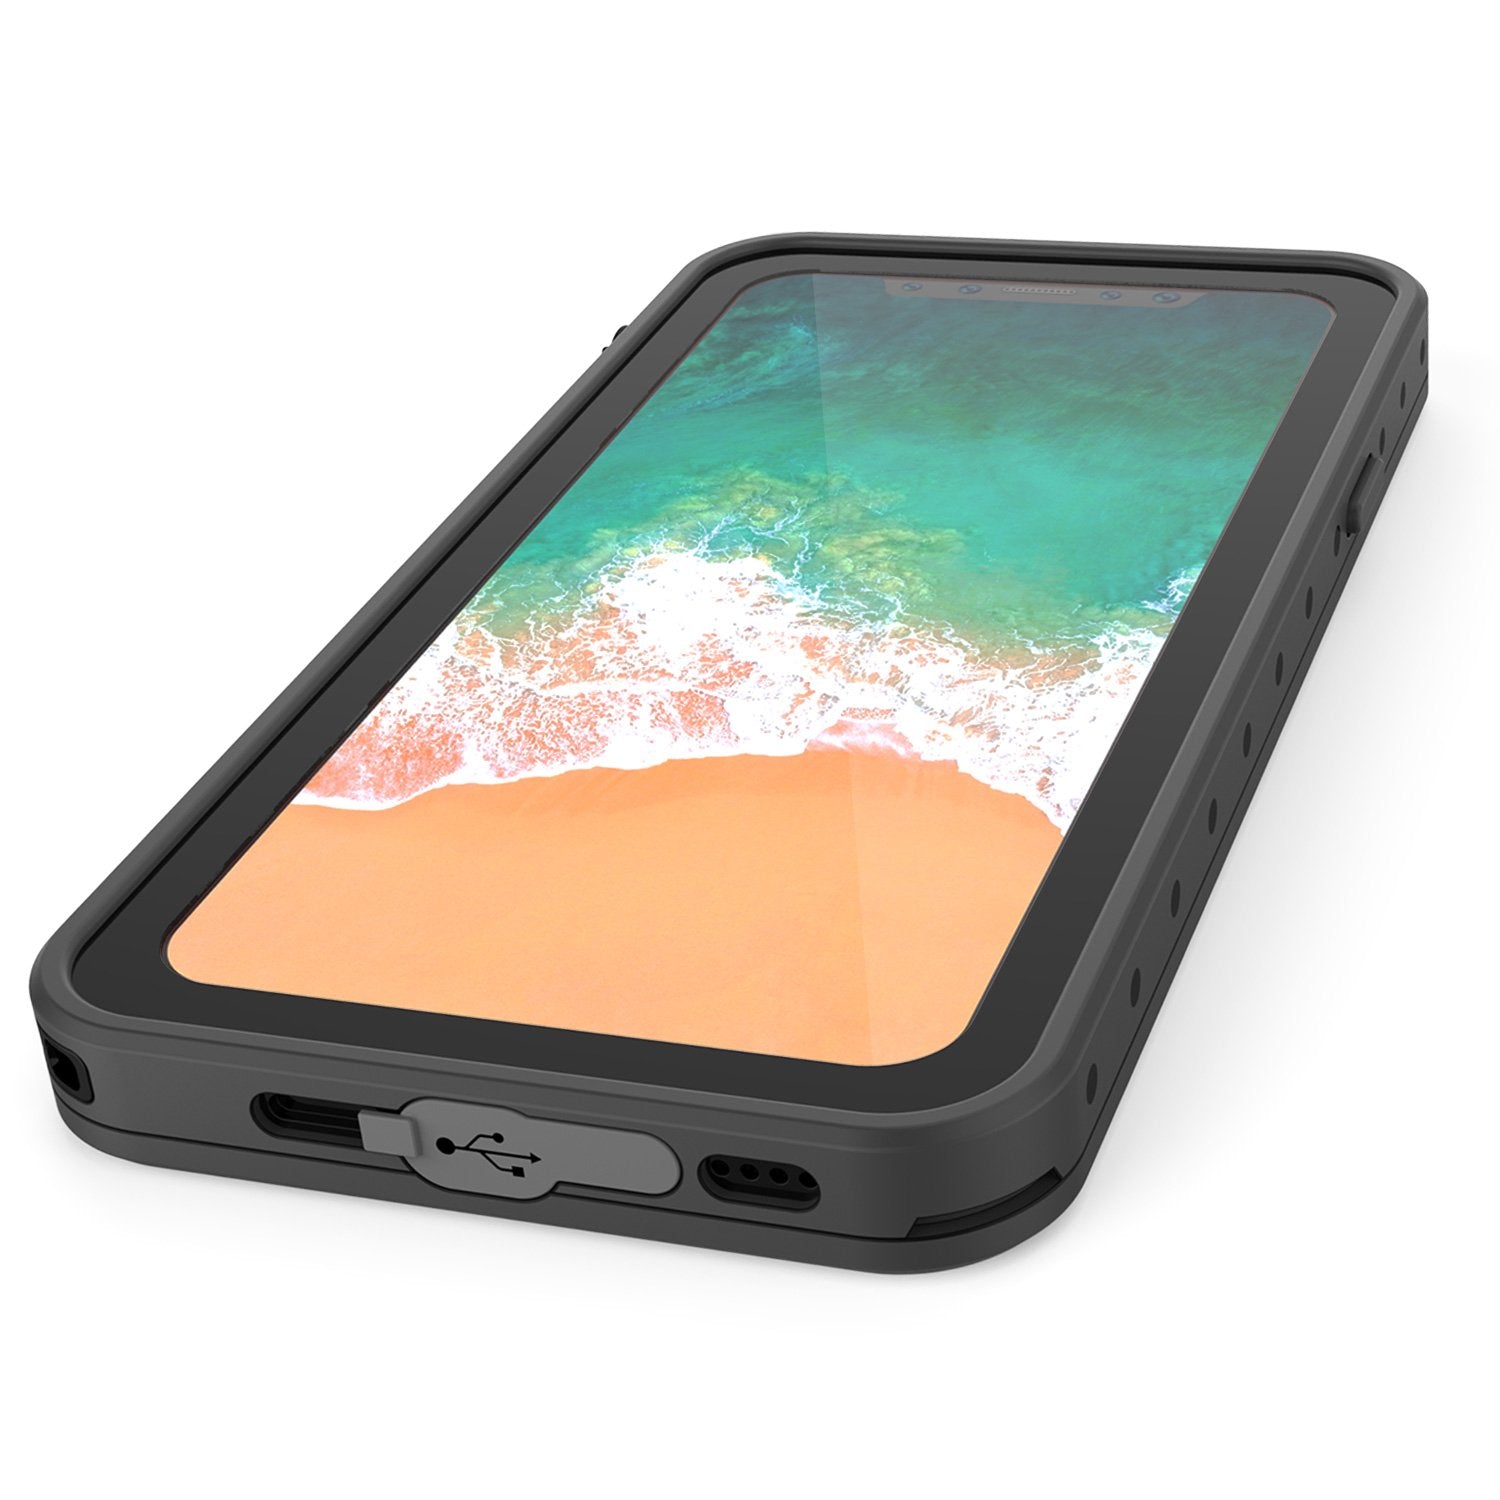 iPhone X Waterproof IP68 Case, Punkcase [Black] [StudStar Series] [Slim Fit] [Dirtproof] - PunkCase NZ